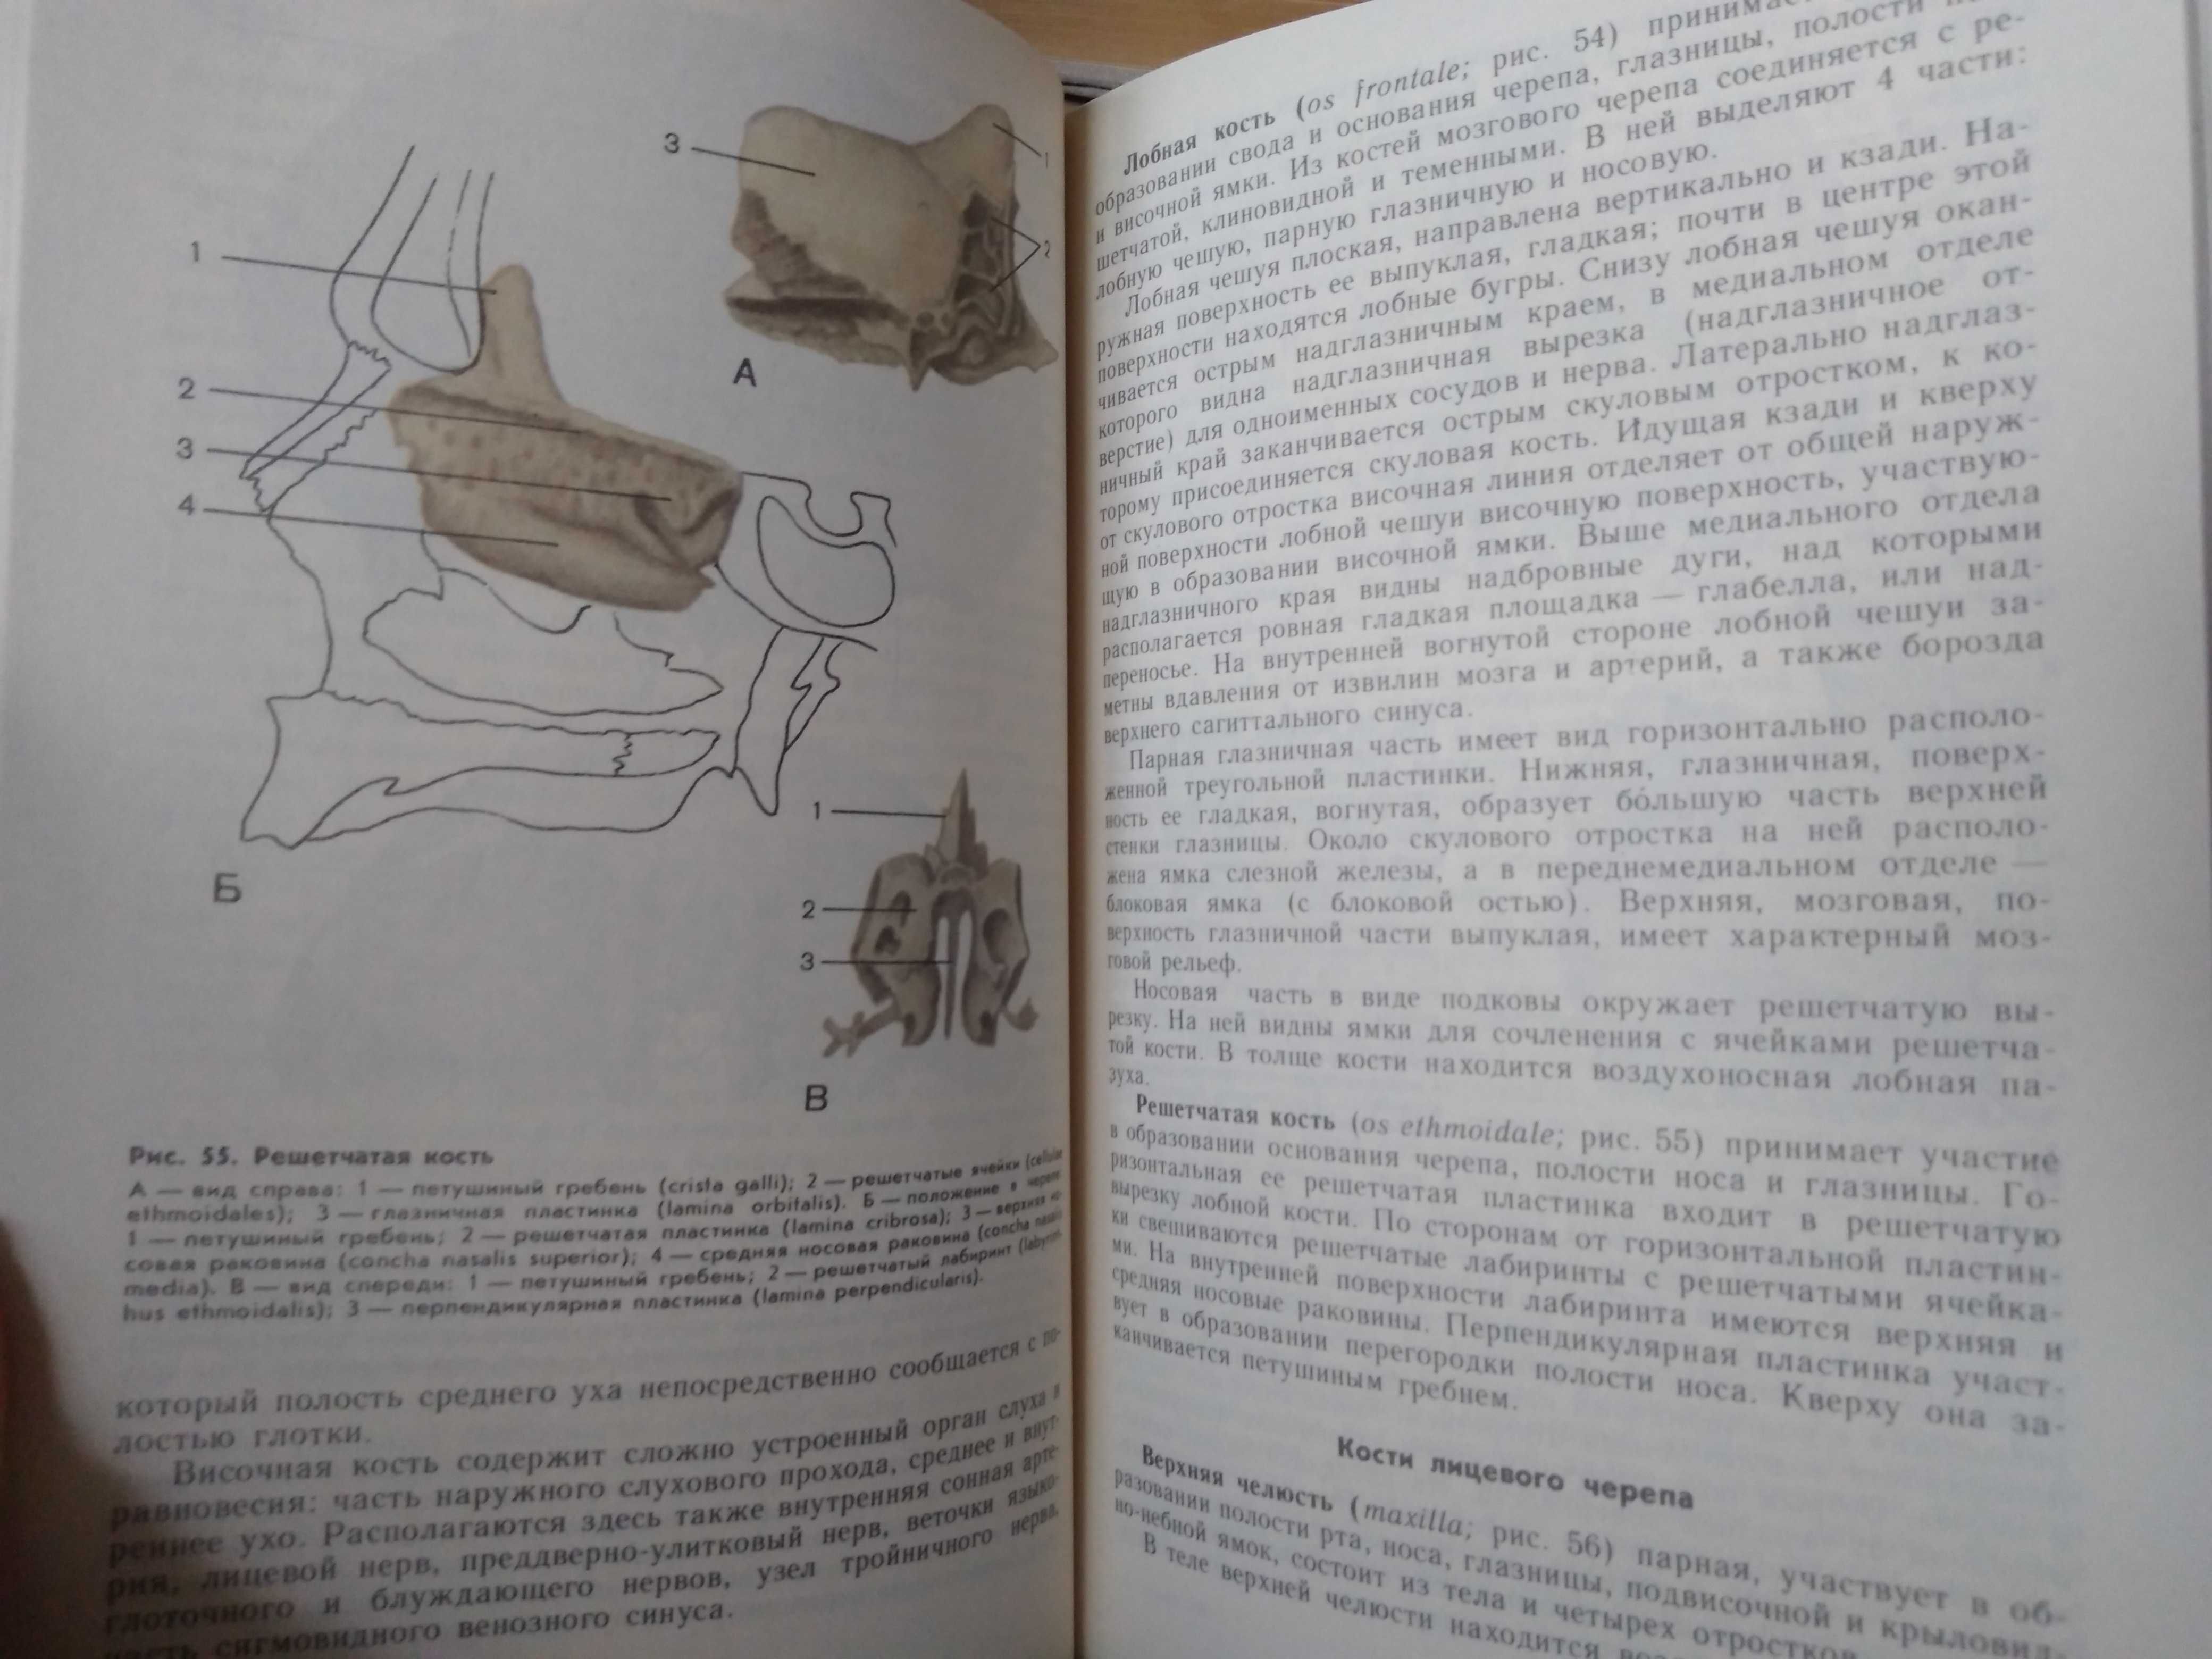 Атлас нормальной анатомии человека В.Липченко, Р.Самусев. 1988.